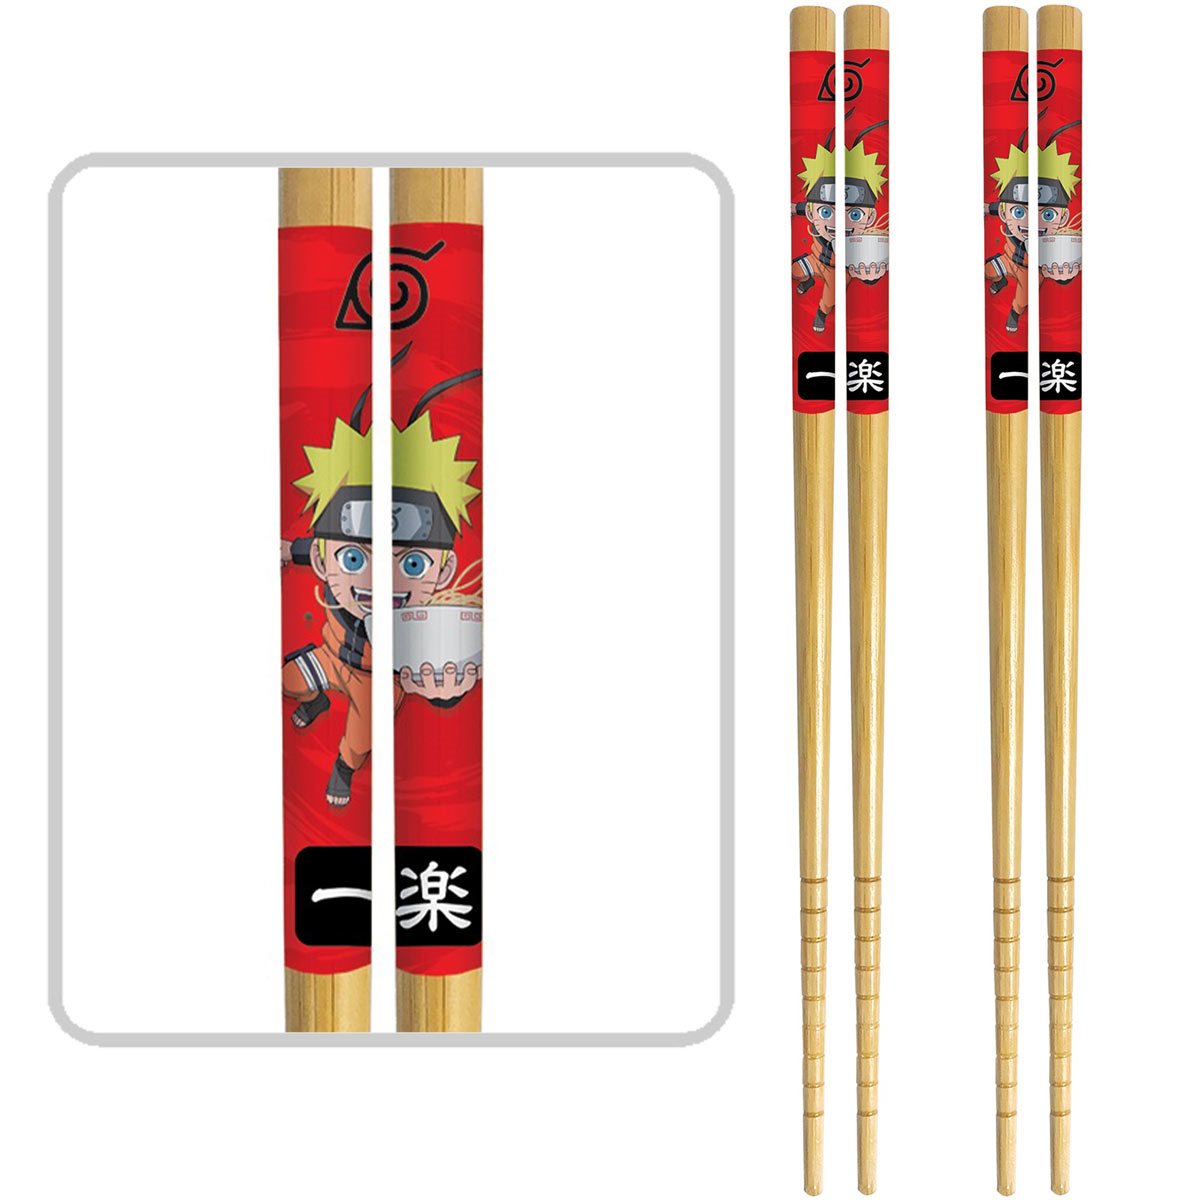 Naruto Shippuden Ichiraku Ramen Chopsticks Squeaky Dog Toy